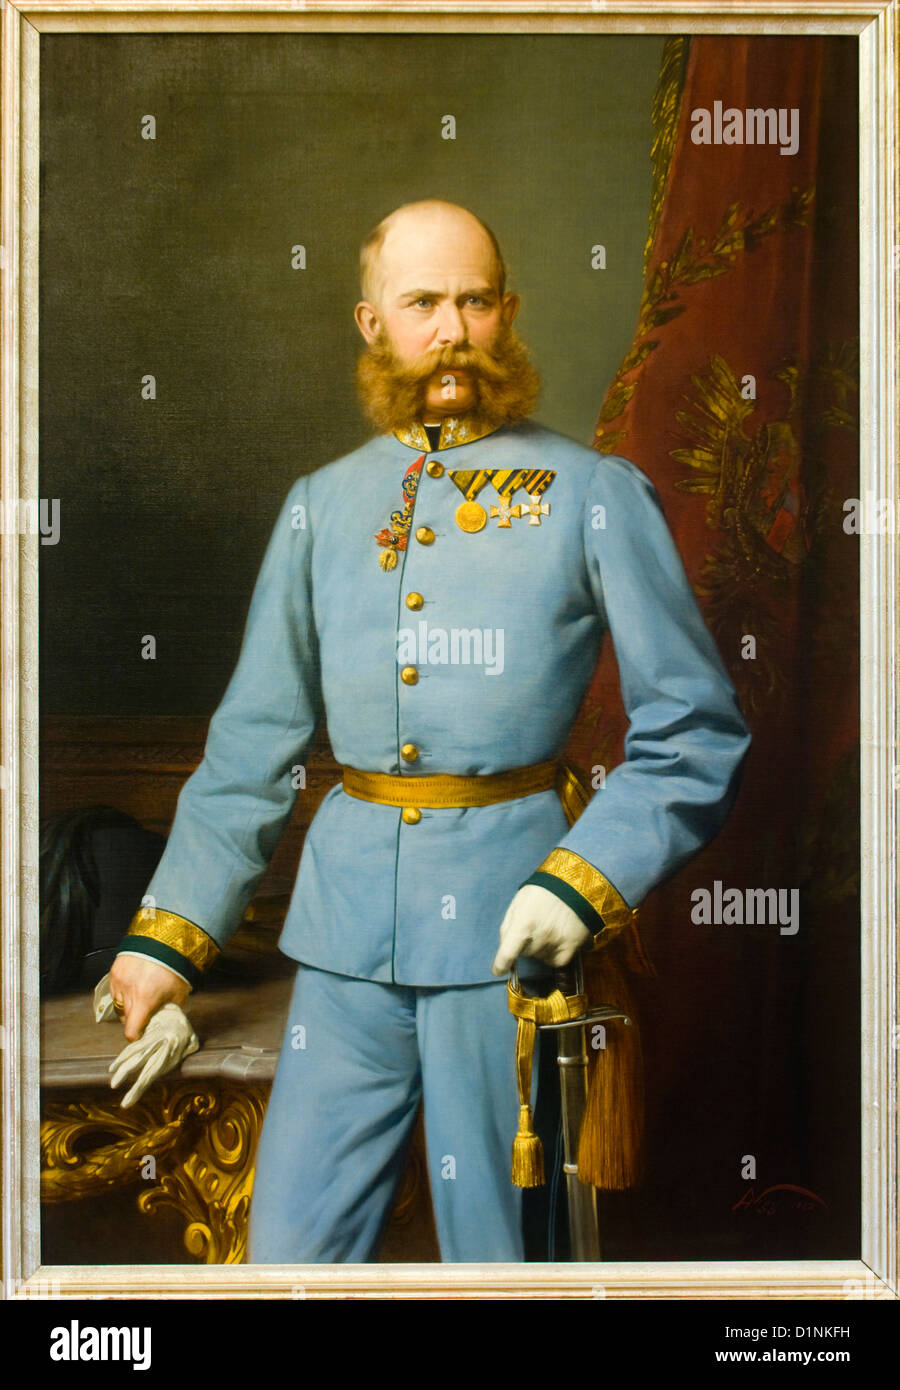 Österreich, Wien 13, Ölgemälde von Kaiser Franz Joseph I (Hermann Nigg 1882) in der Hermesvilla im Lainzer Tiergarten Foto Stock